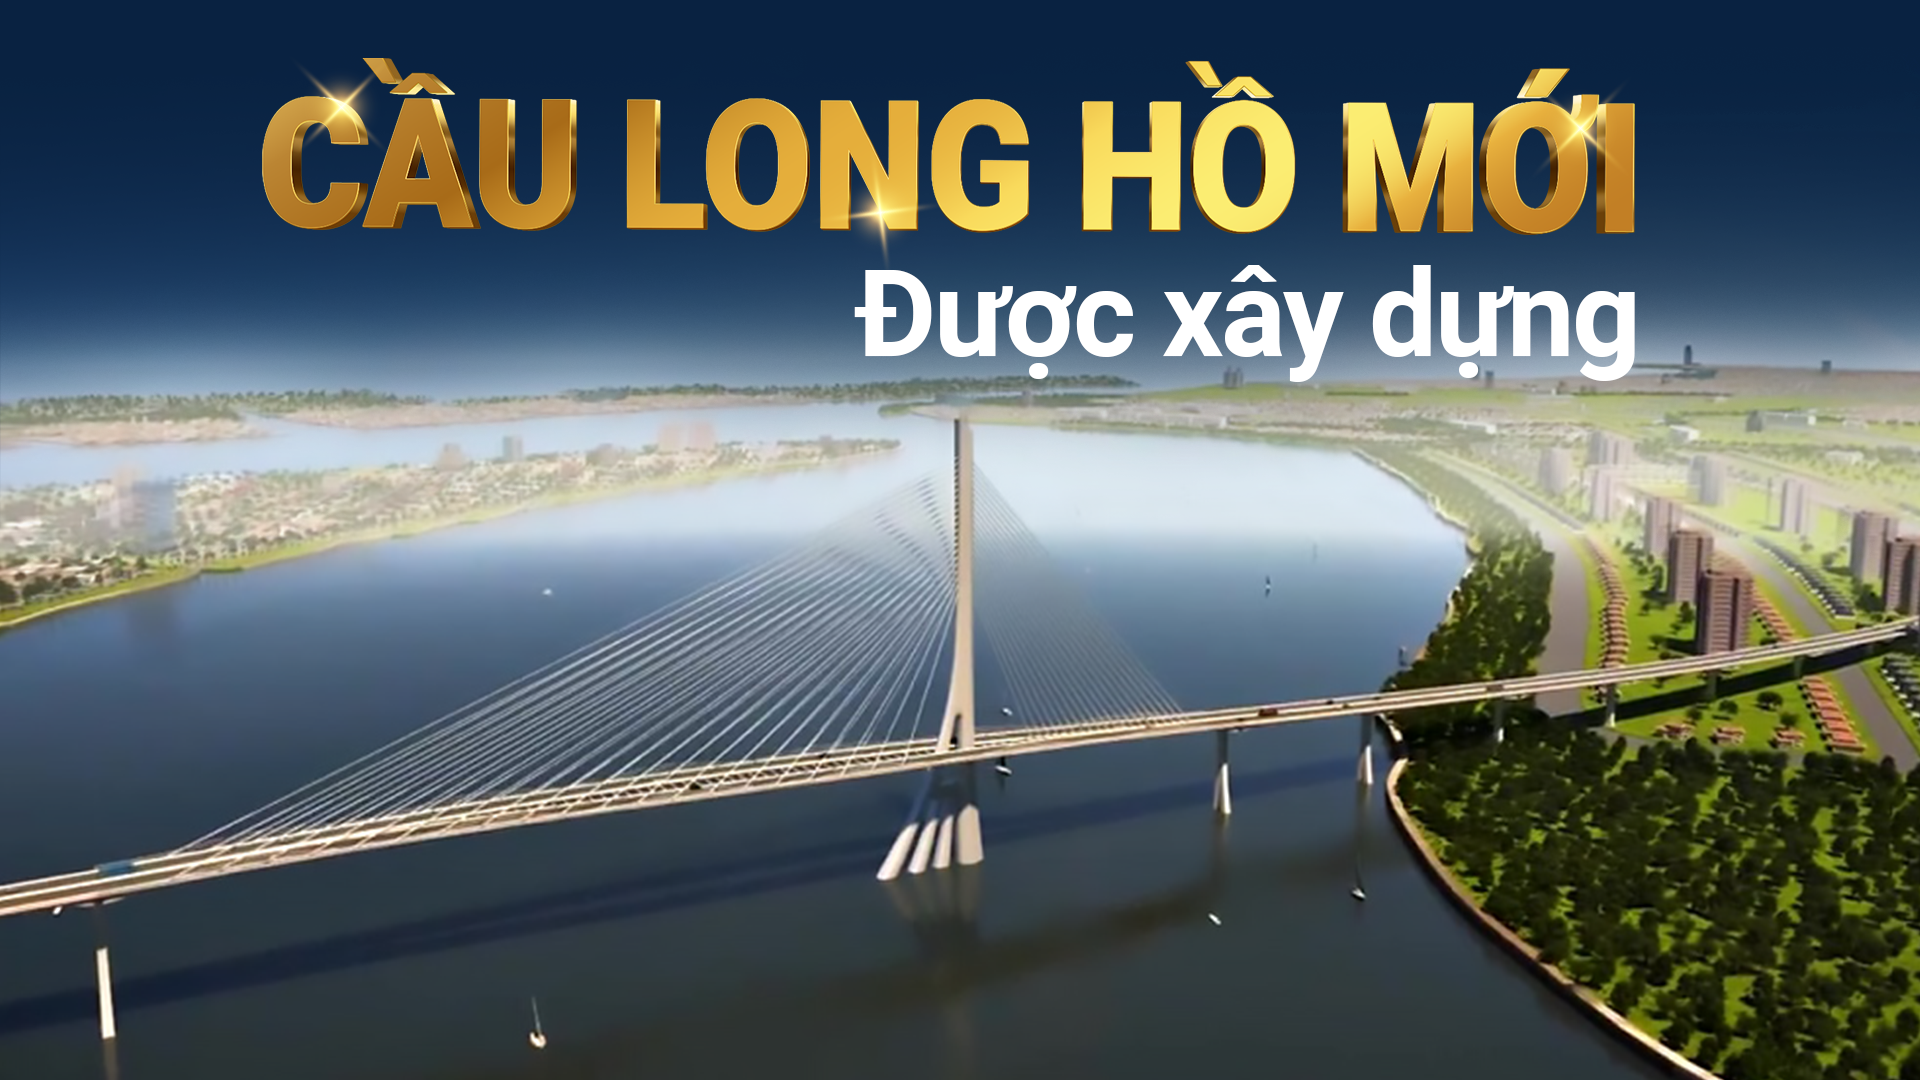 Cầu Long Hồ mới được xây dựng 